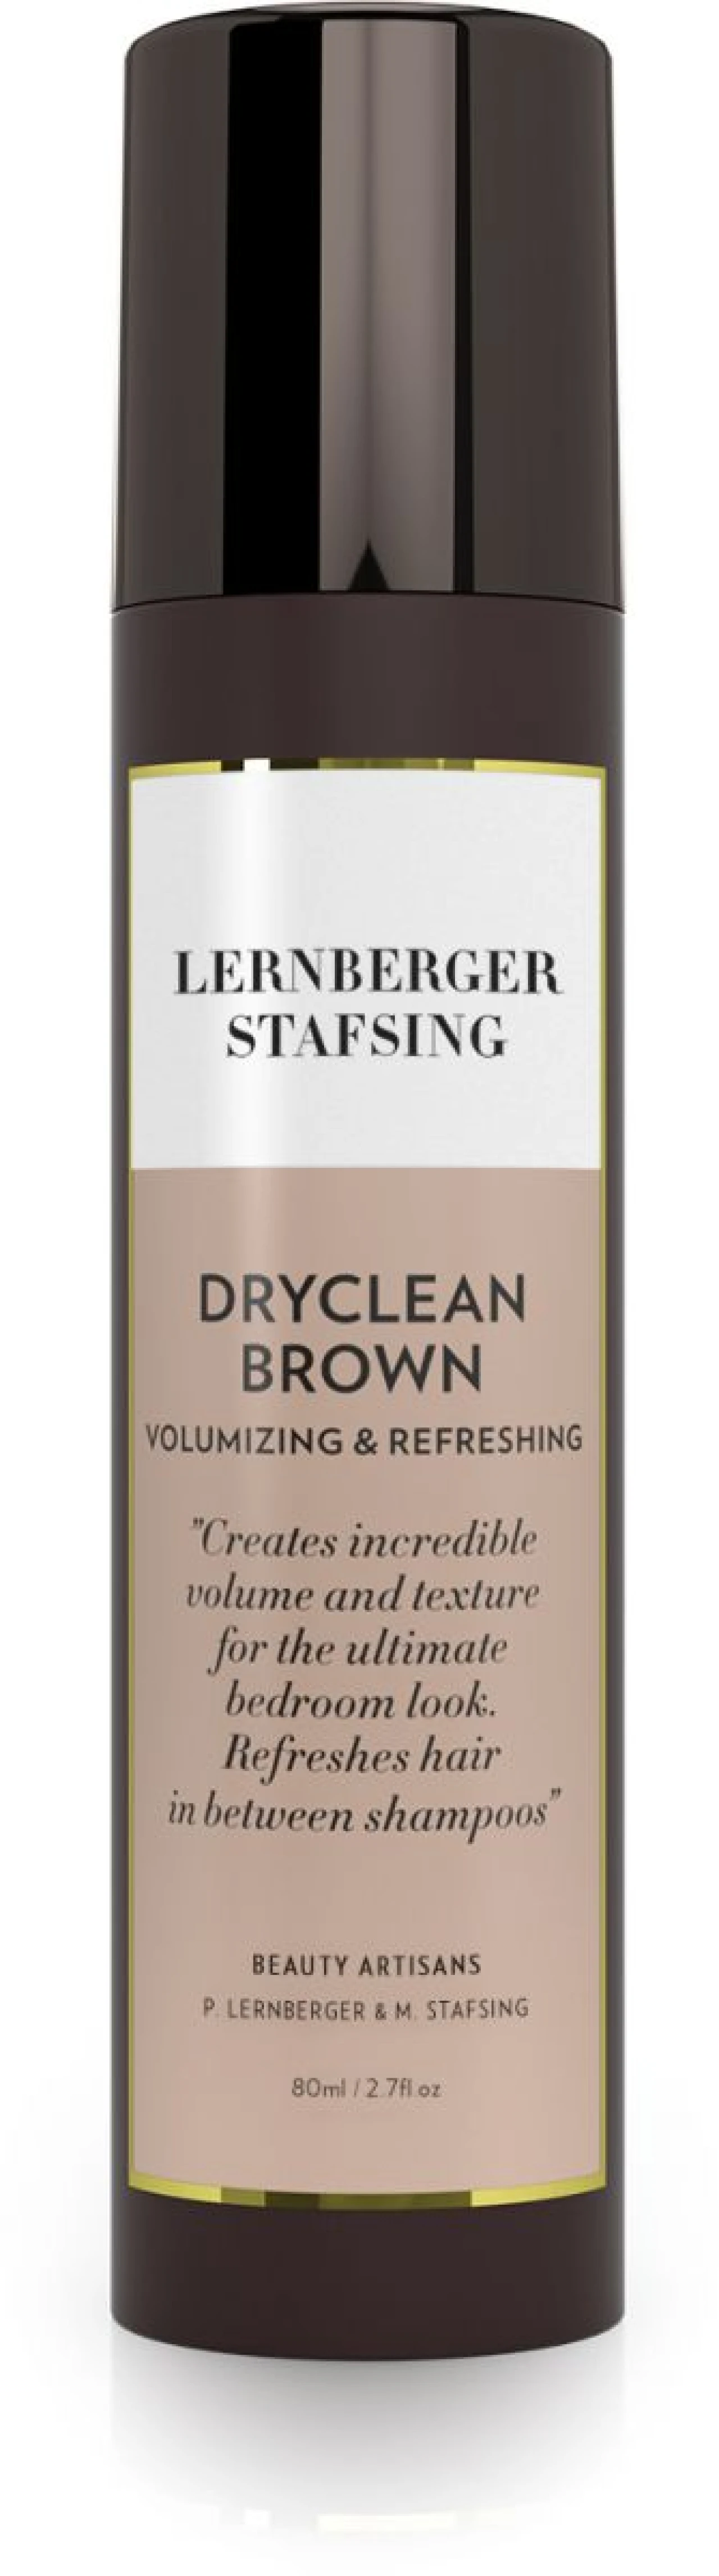 Lernberger Stafsing Dryclean Brown